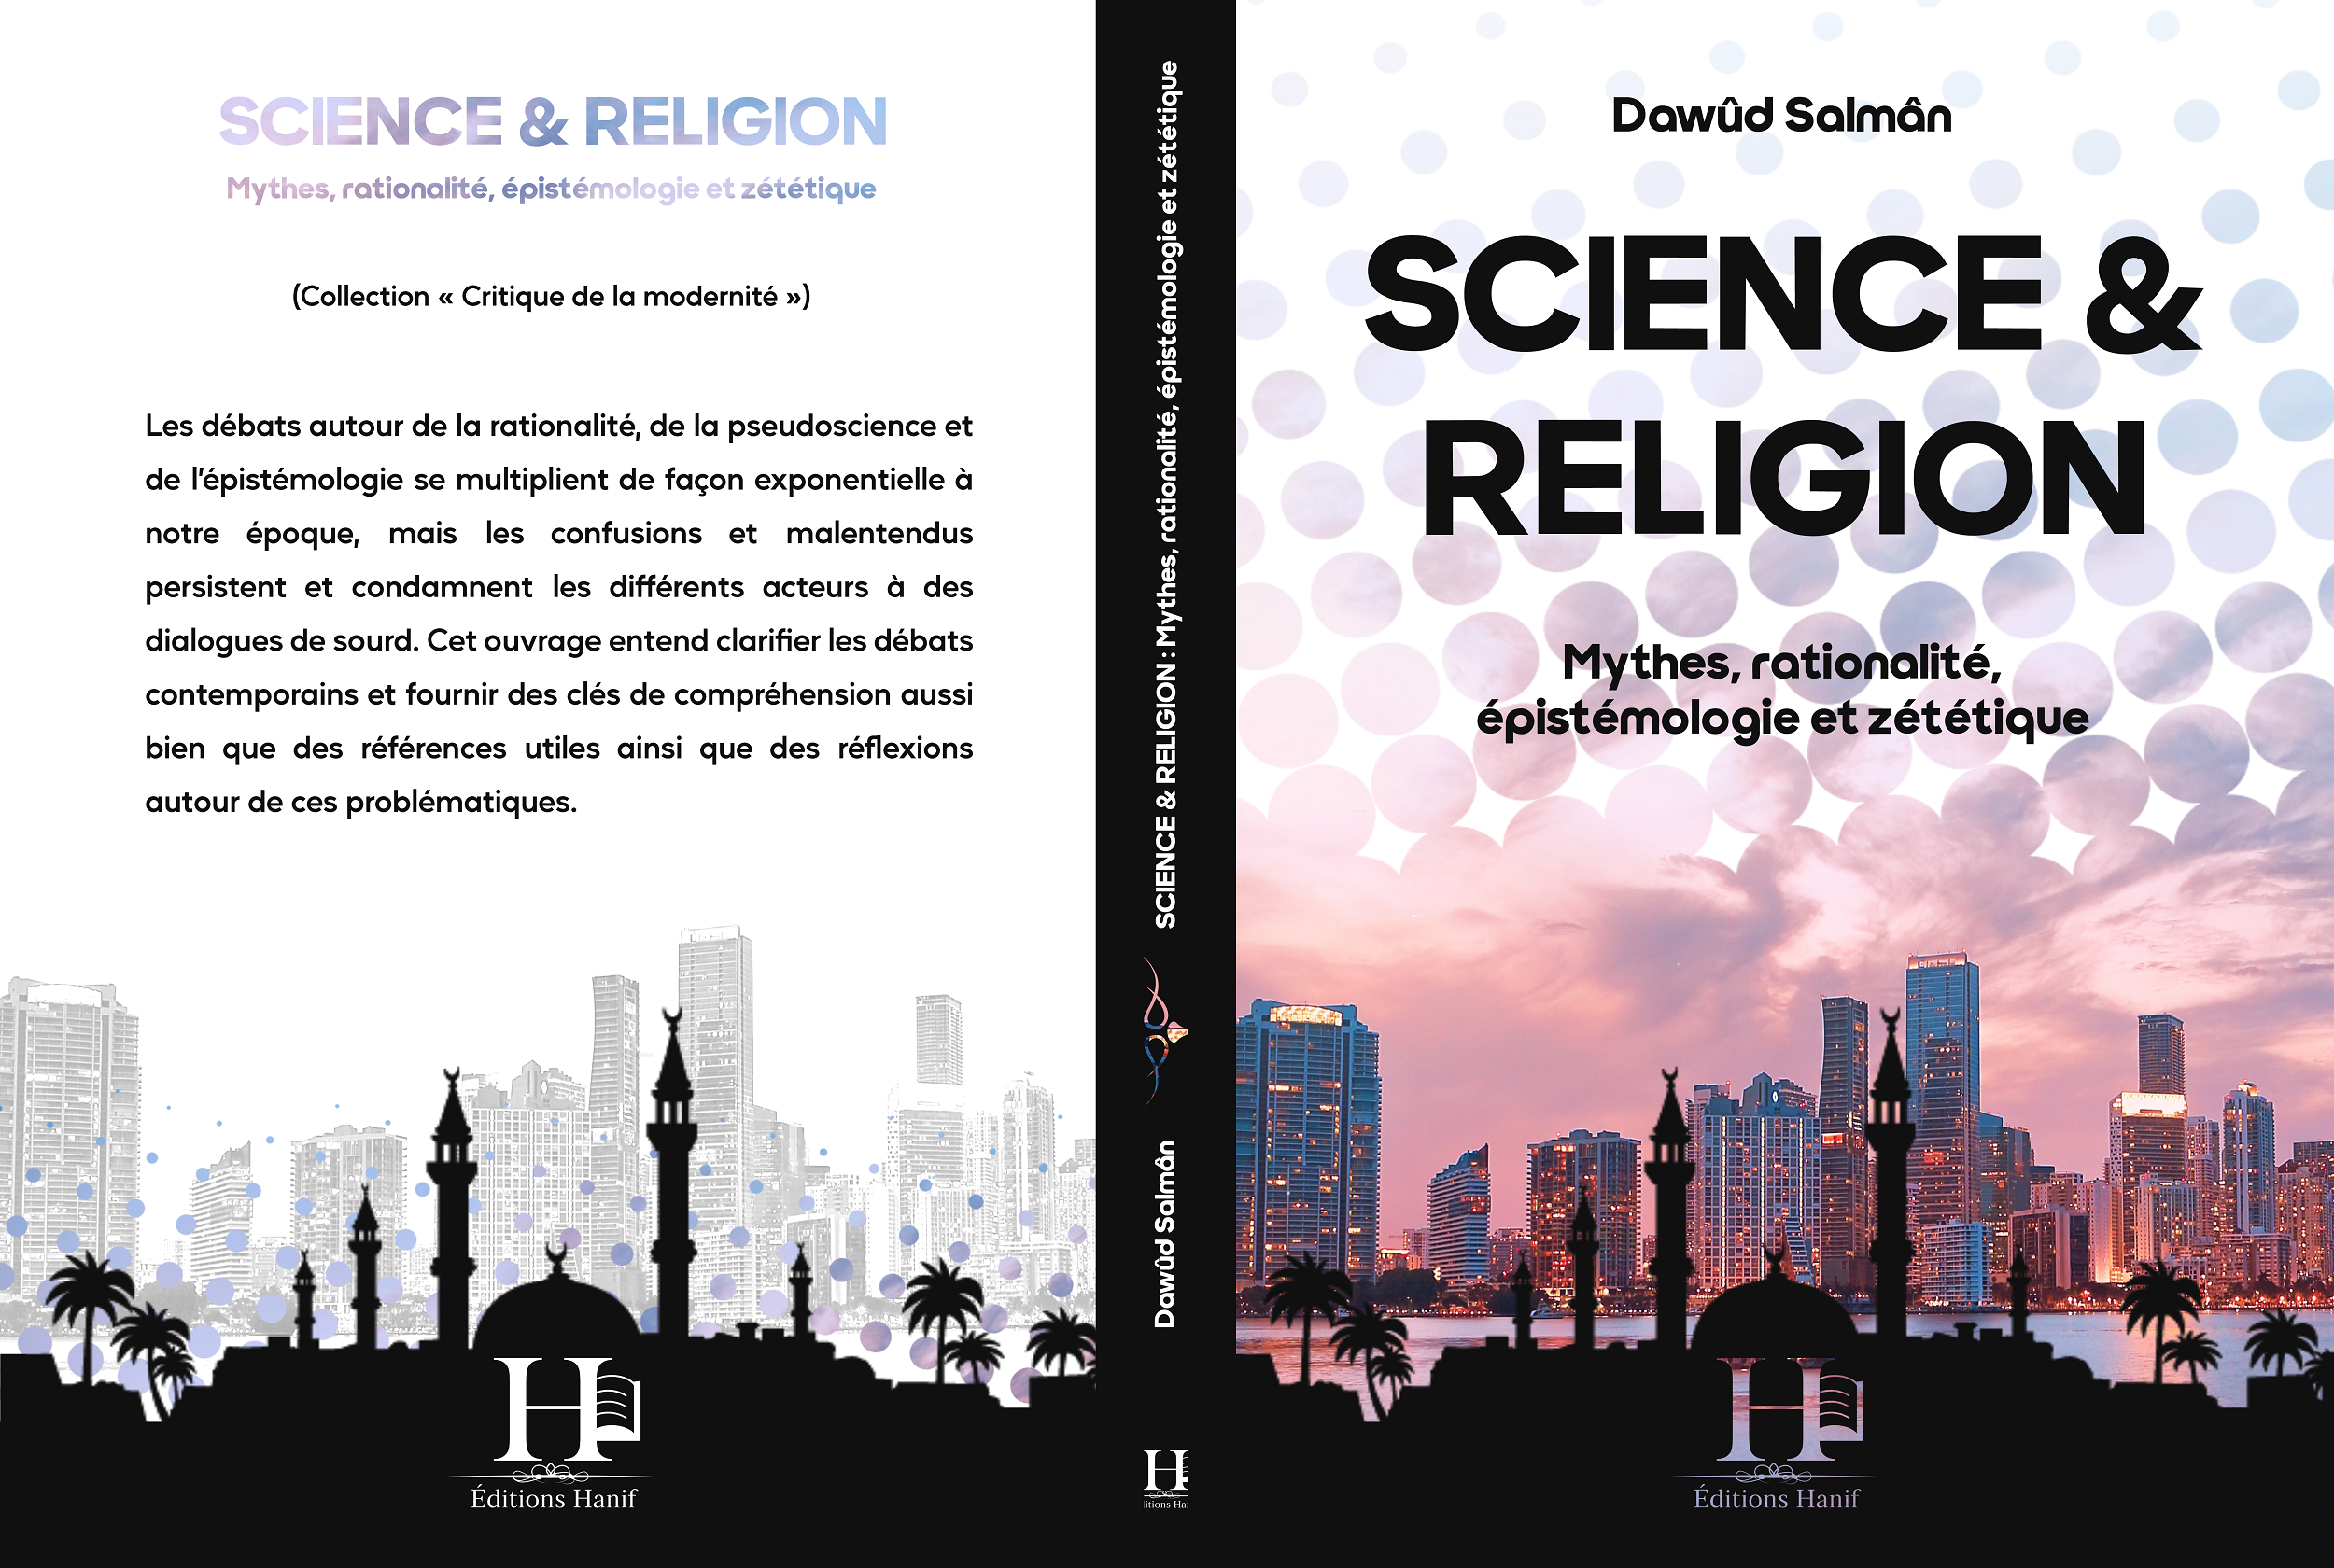 Ebook -  Science et Religion - Mythes, rationalité, épistémologie et zététique (Dawûd Salmân - 2022)